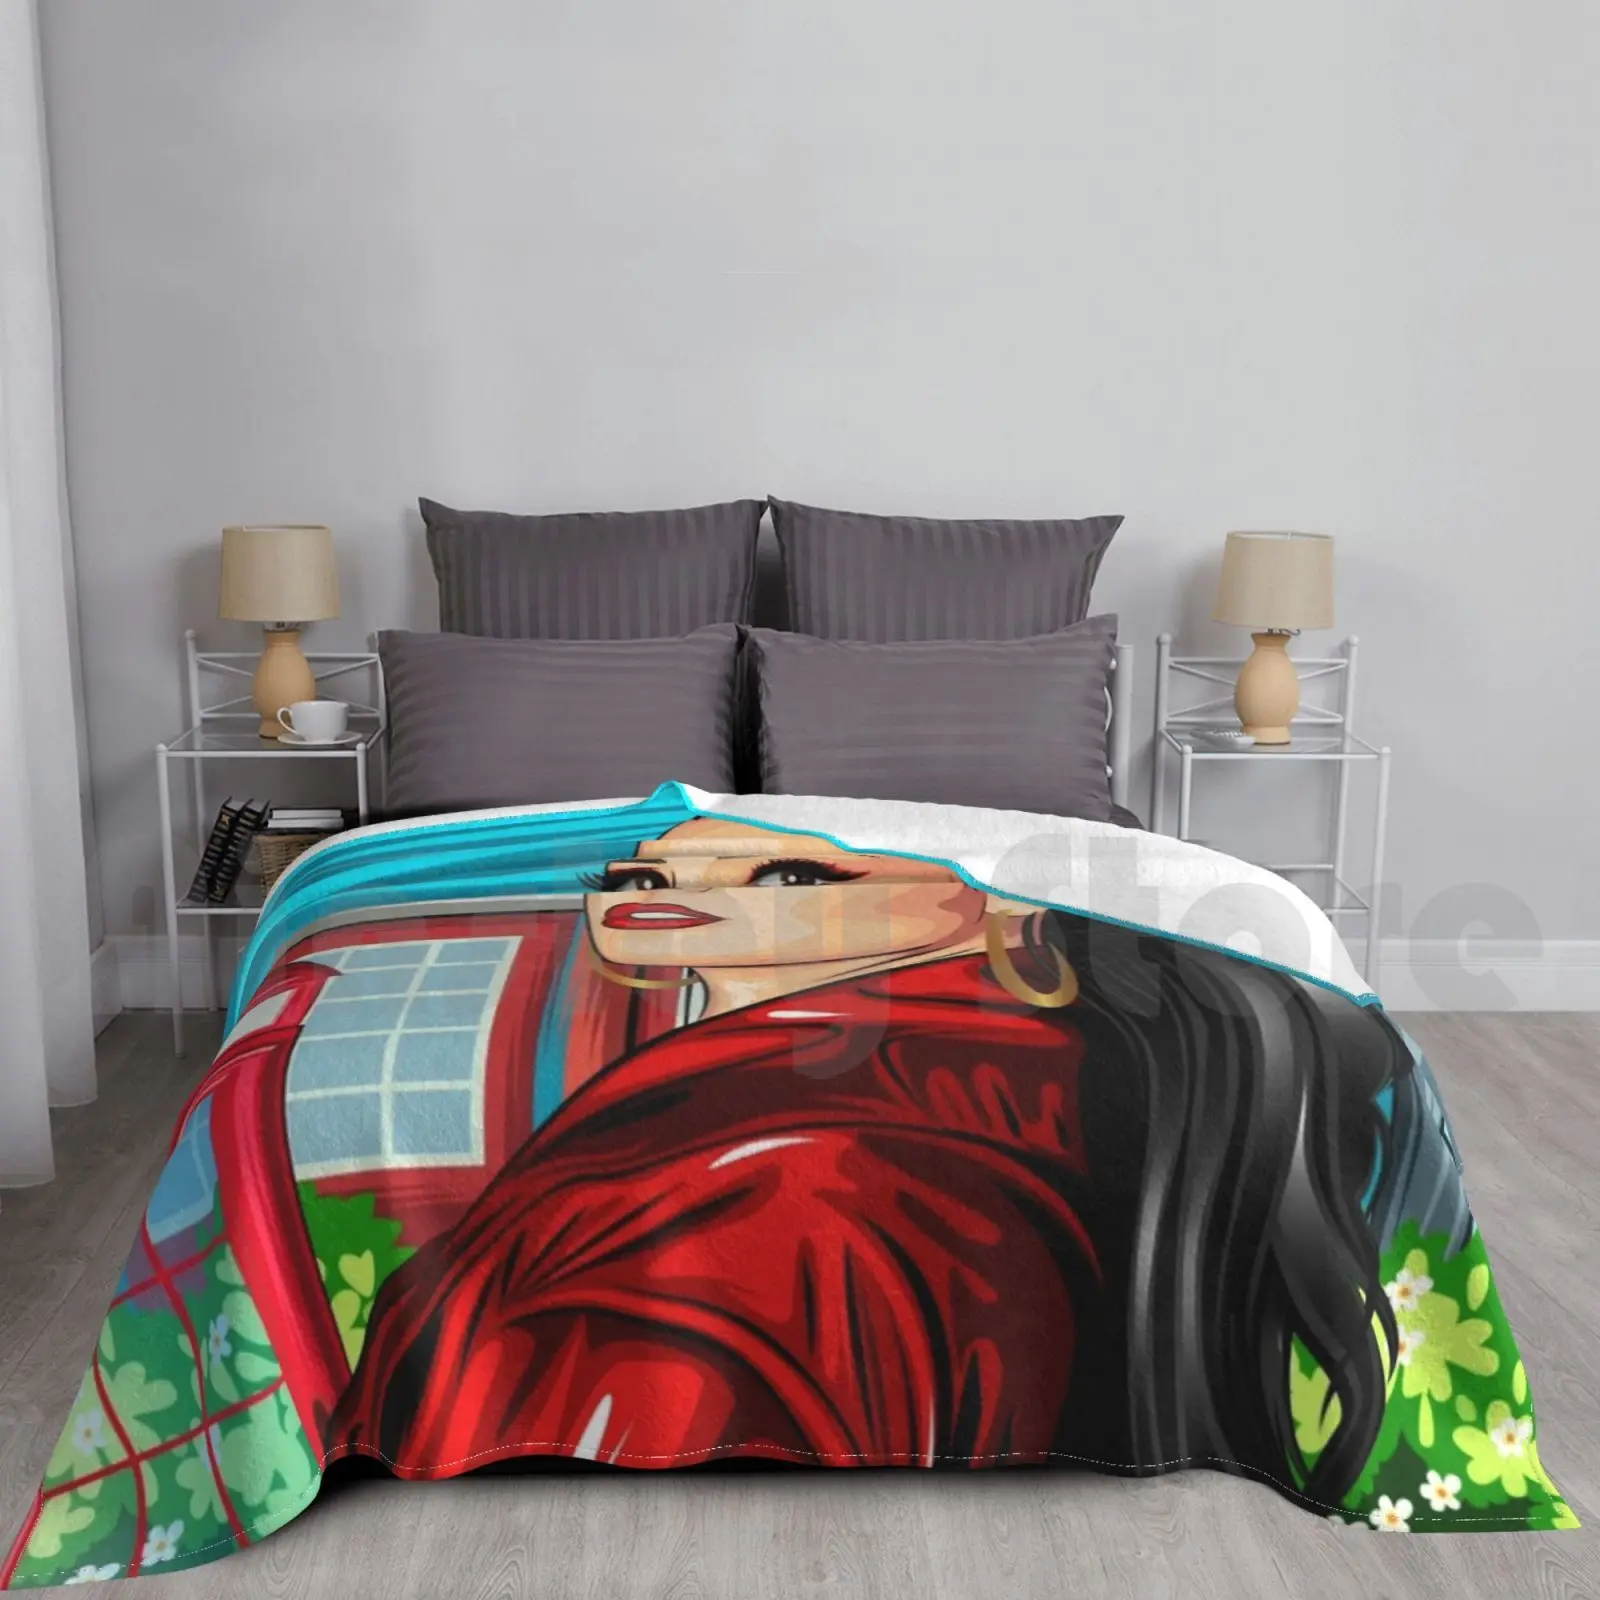 

Деми Ловато художественное одеяло для дивана-кровати путешествия Деми Ловато голливуд знаменитости певец Фанарт я люблю меня красный